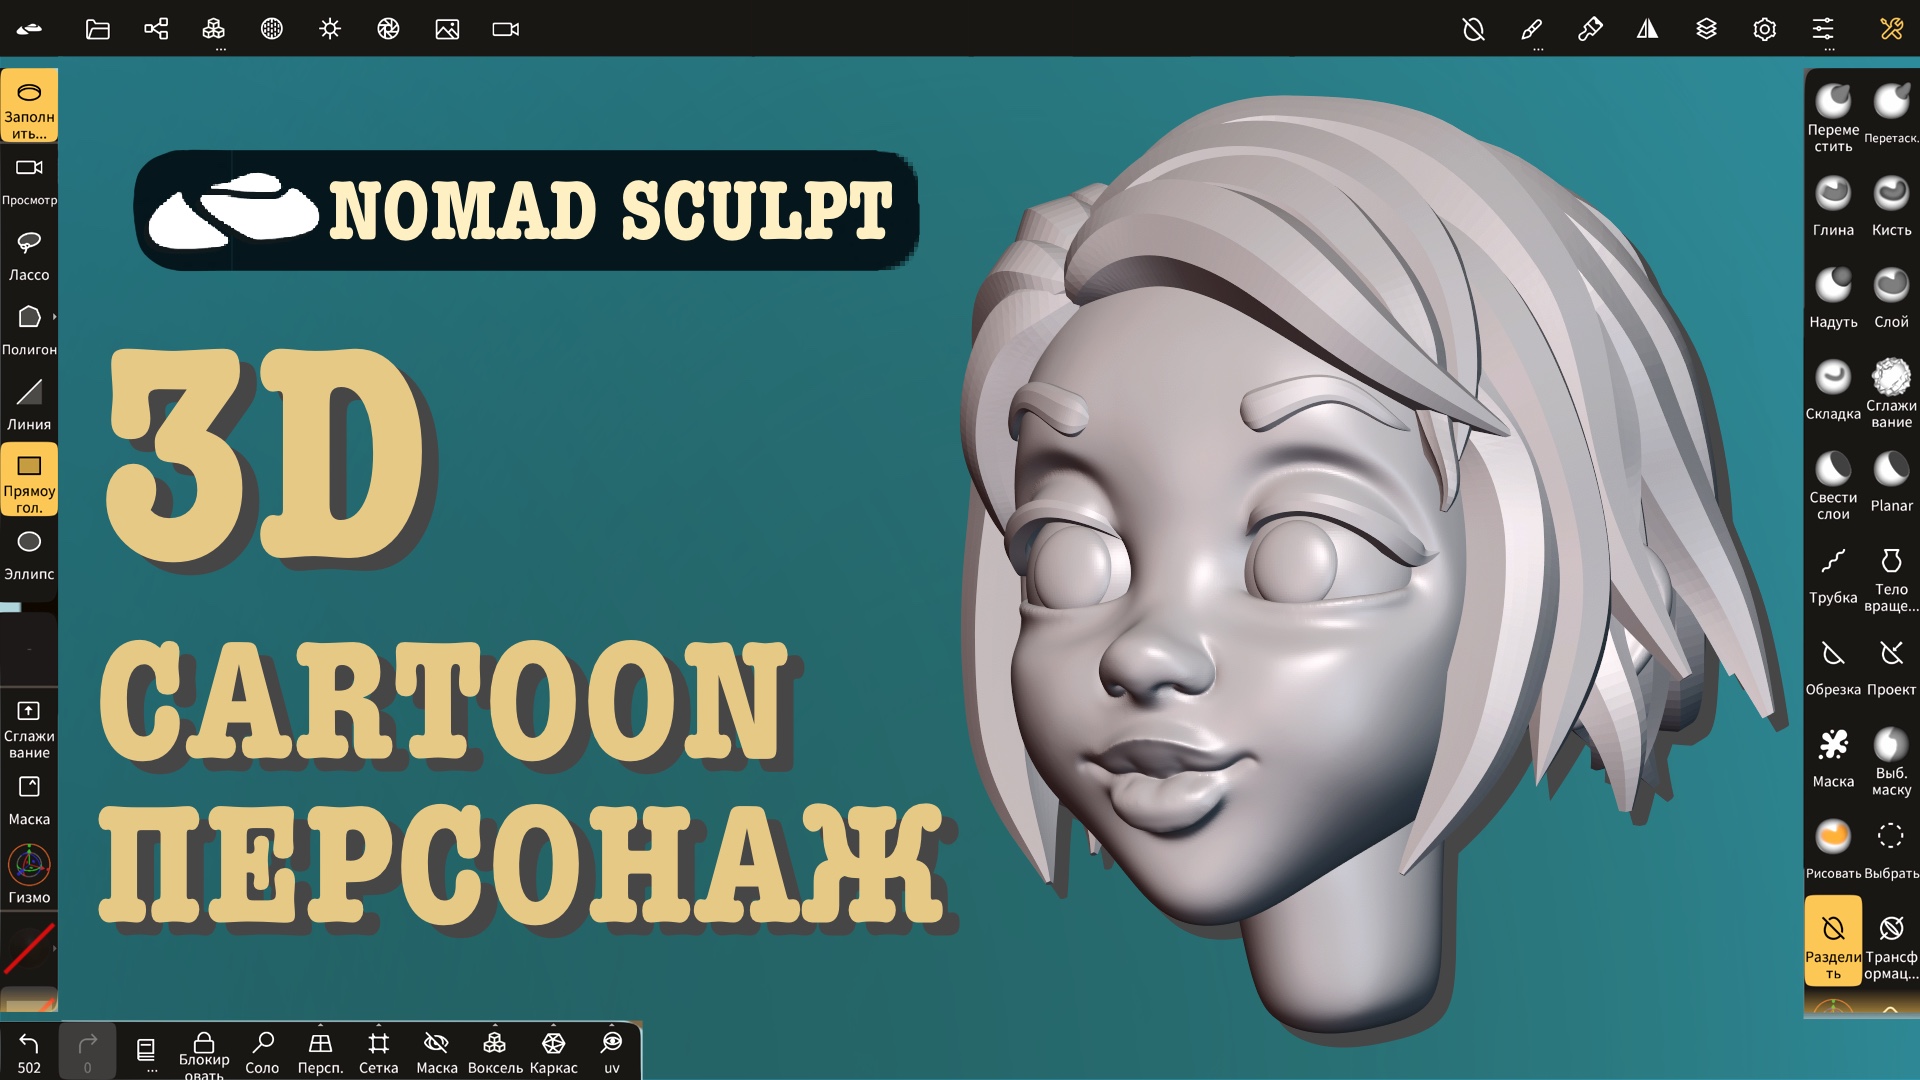 3d cartoon персонаж (голова, лицо) в Nomad Sculpt. Уроки 3д для начинающих